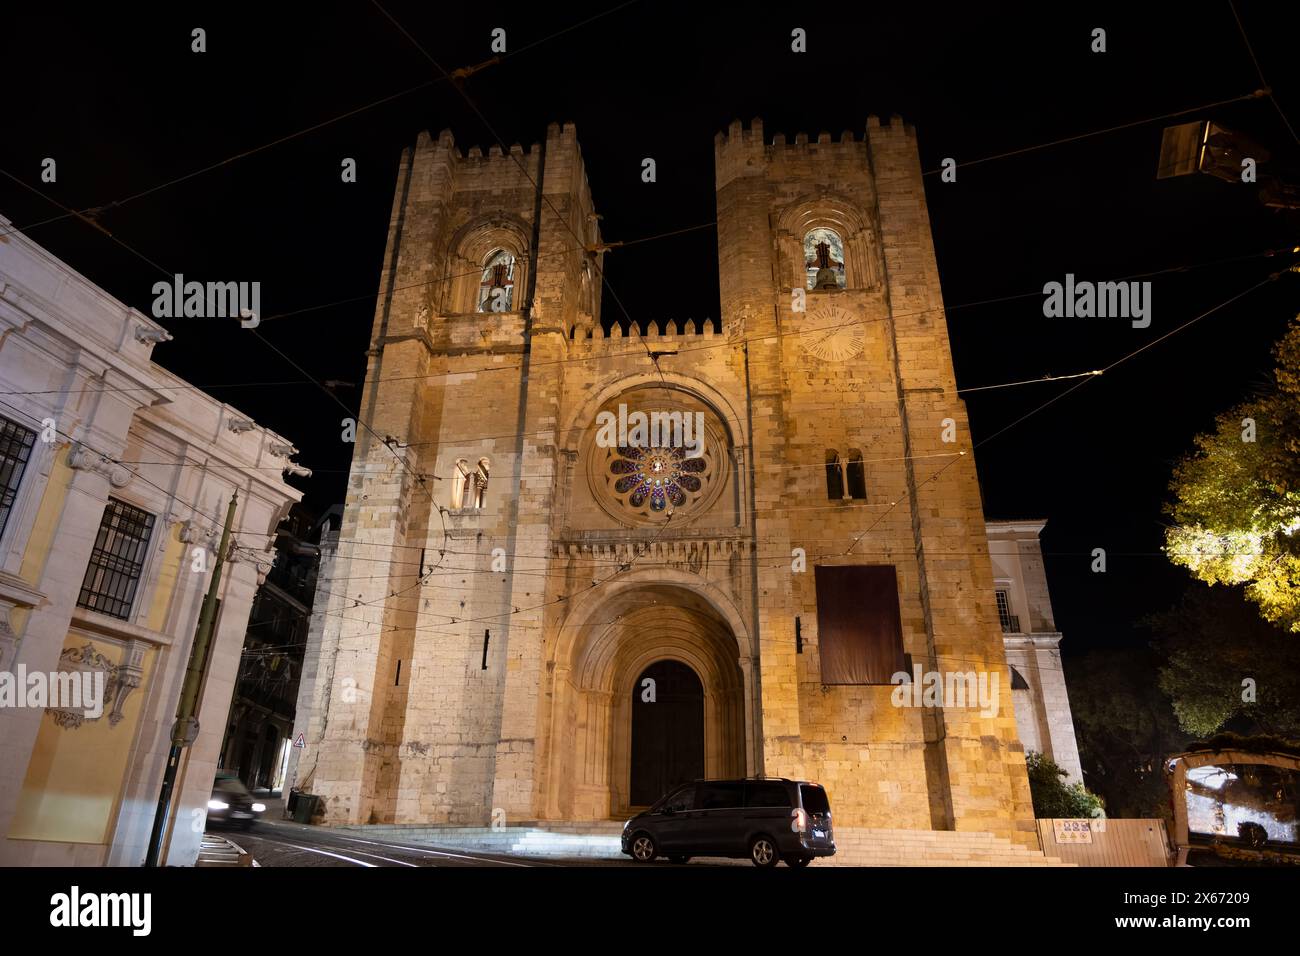 Cathédrale Sainte-Marie-majeure de Lisbonne illuminée la nuit au Portugal. Banque D'Images